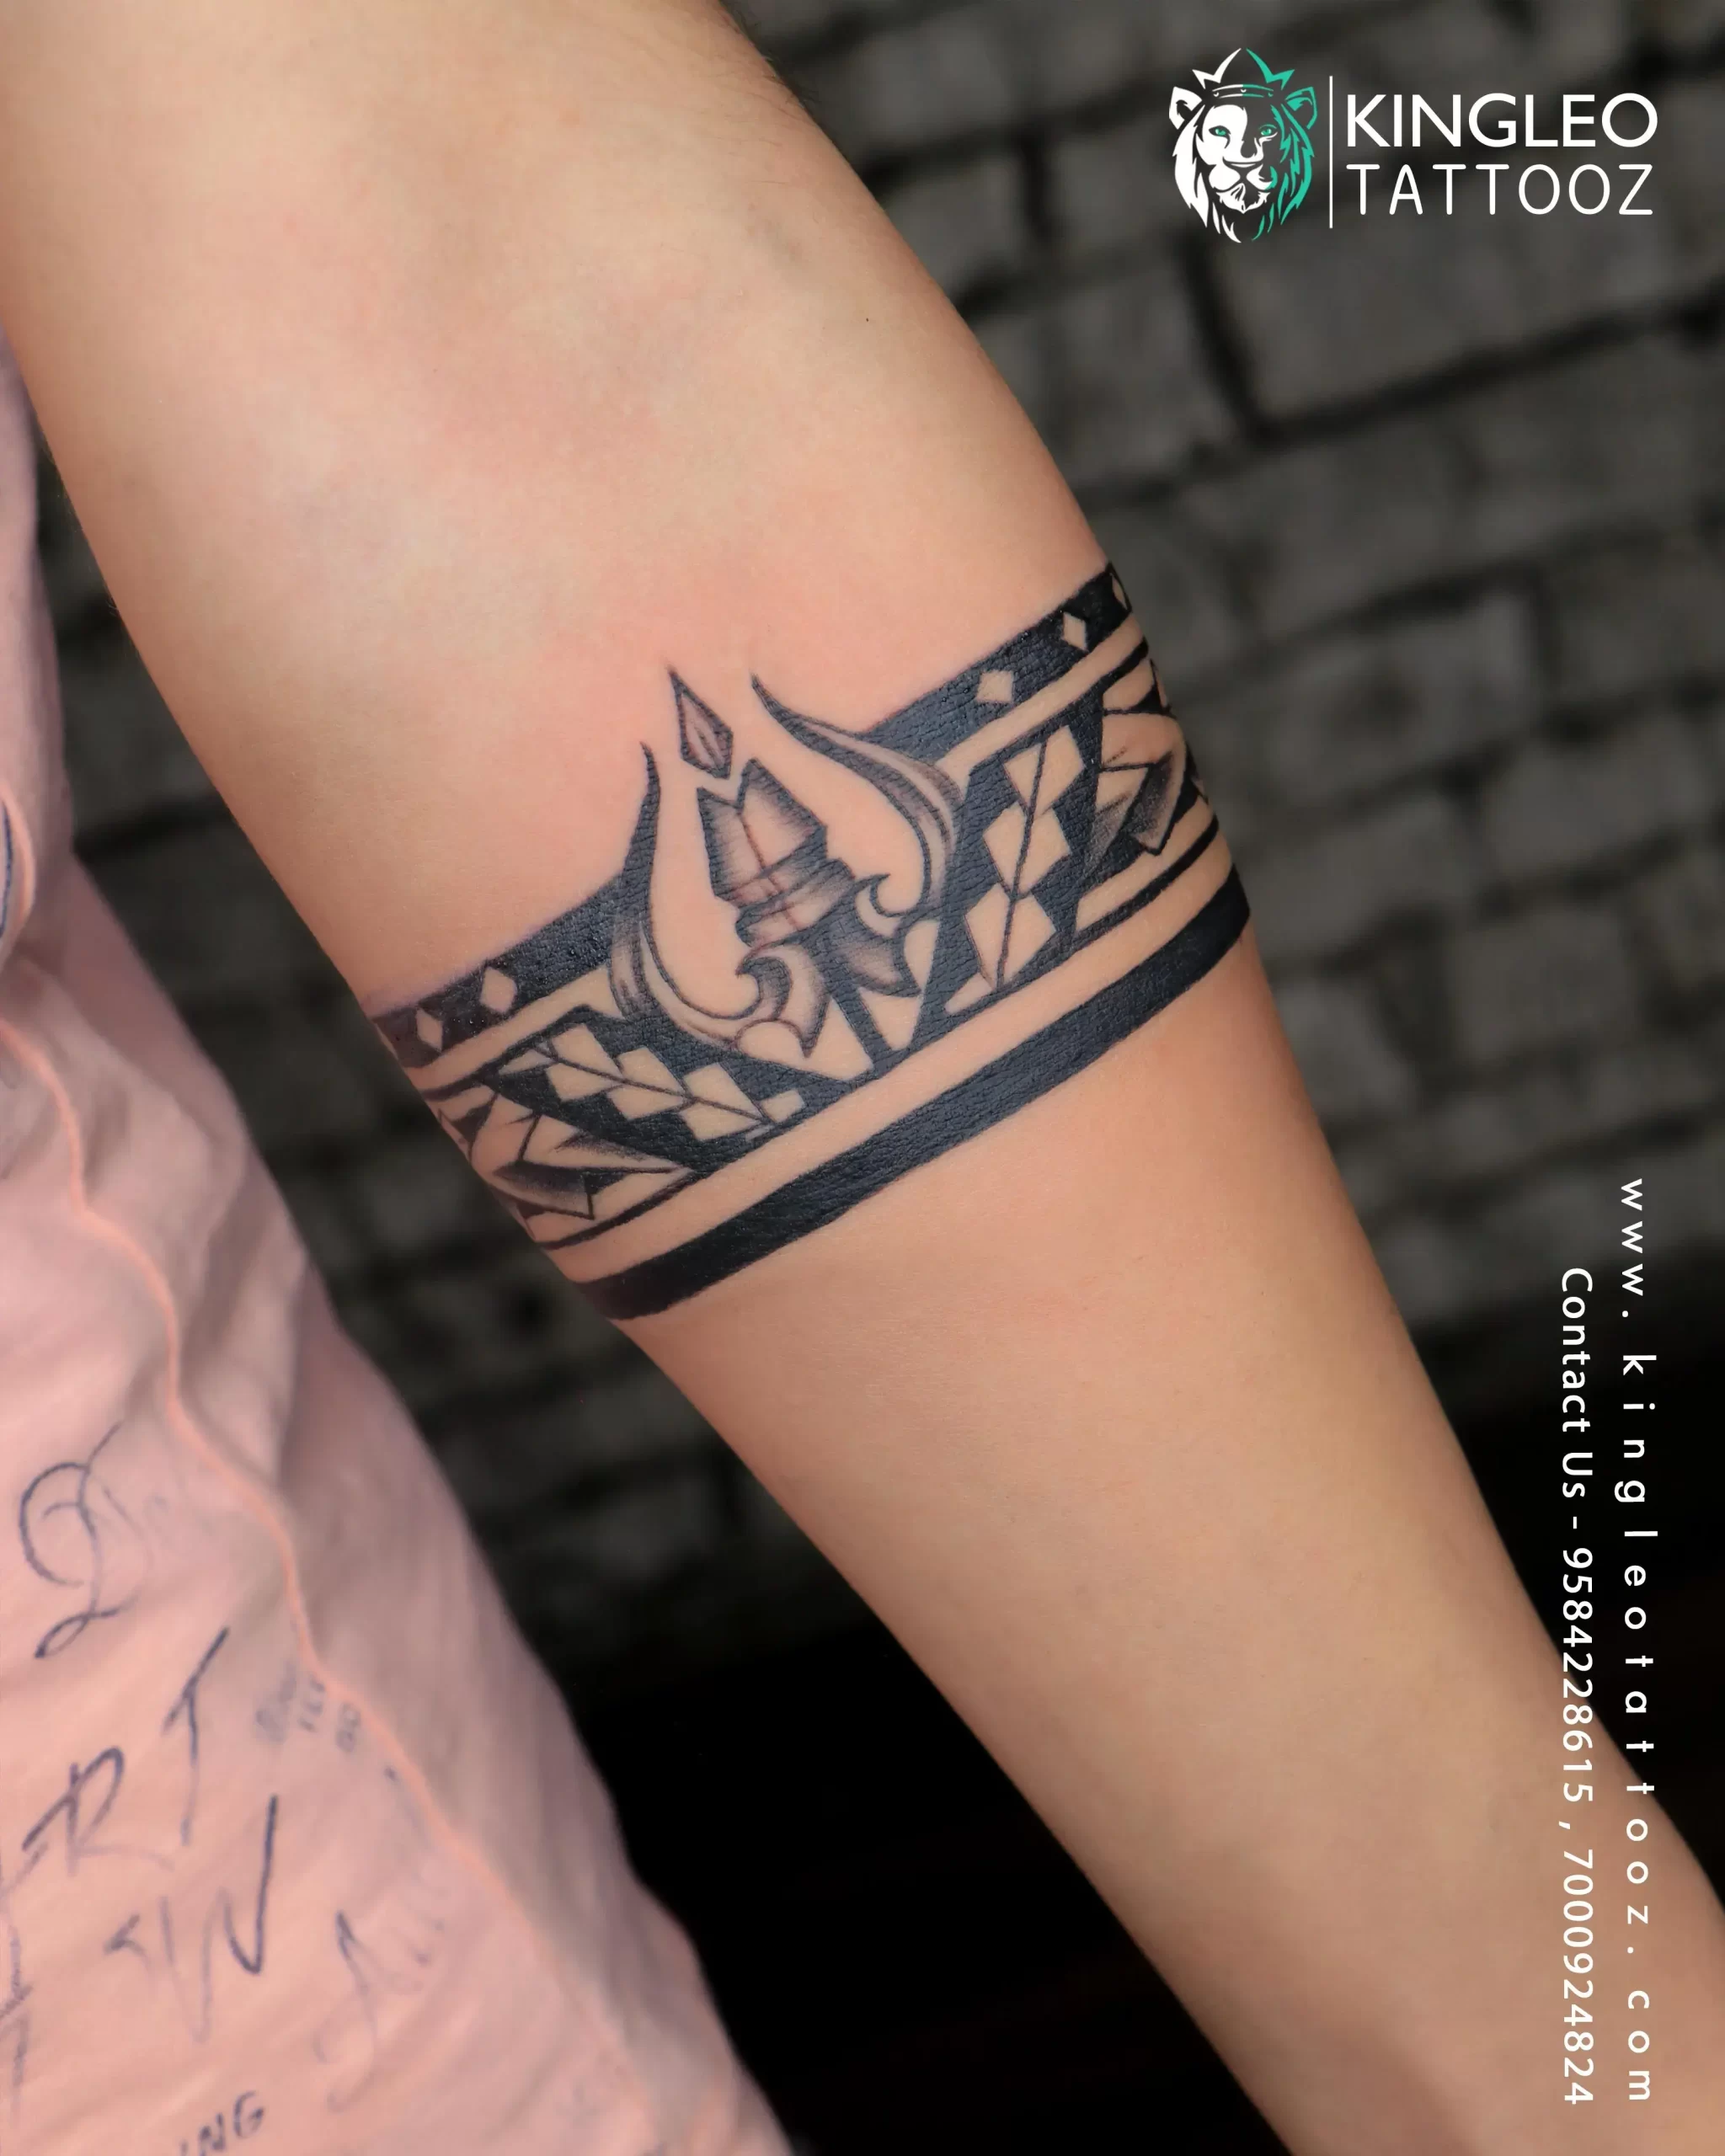 The Fine Art Tattoos Studio - Belt tattoo#tattoo | Facebook